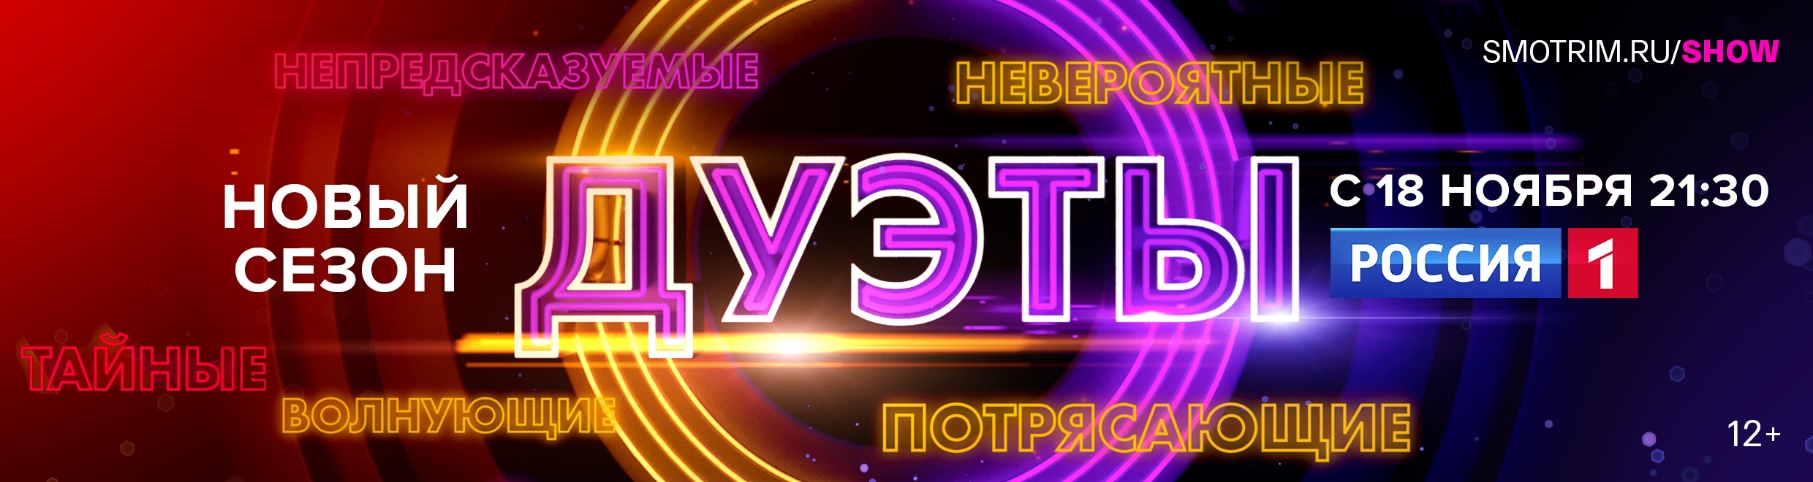 На телеканале "Россия" стартует новый сезон музыкального шоу "Дуэты"